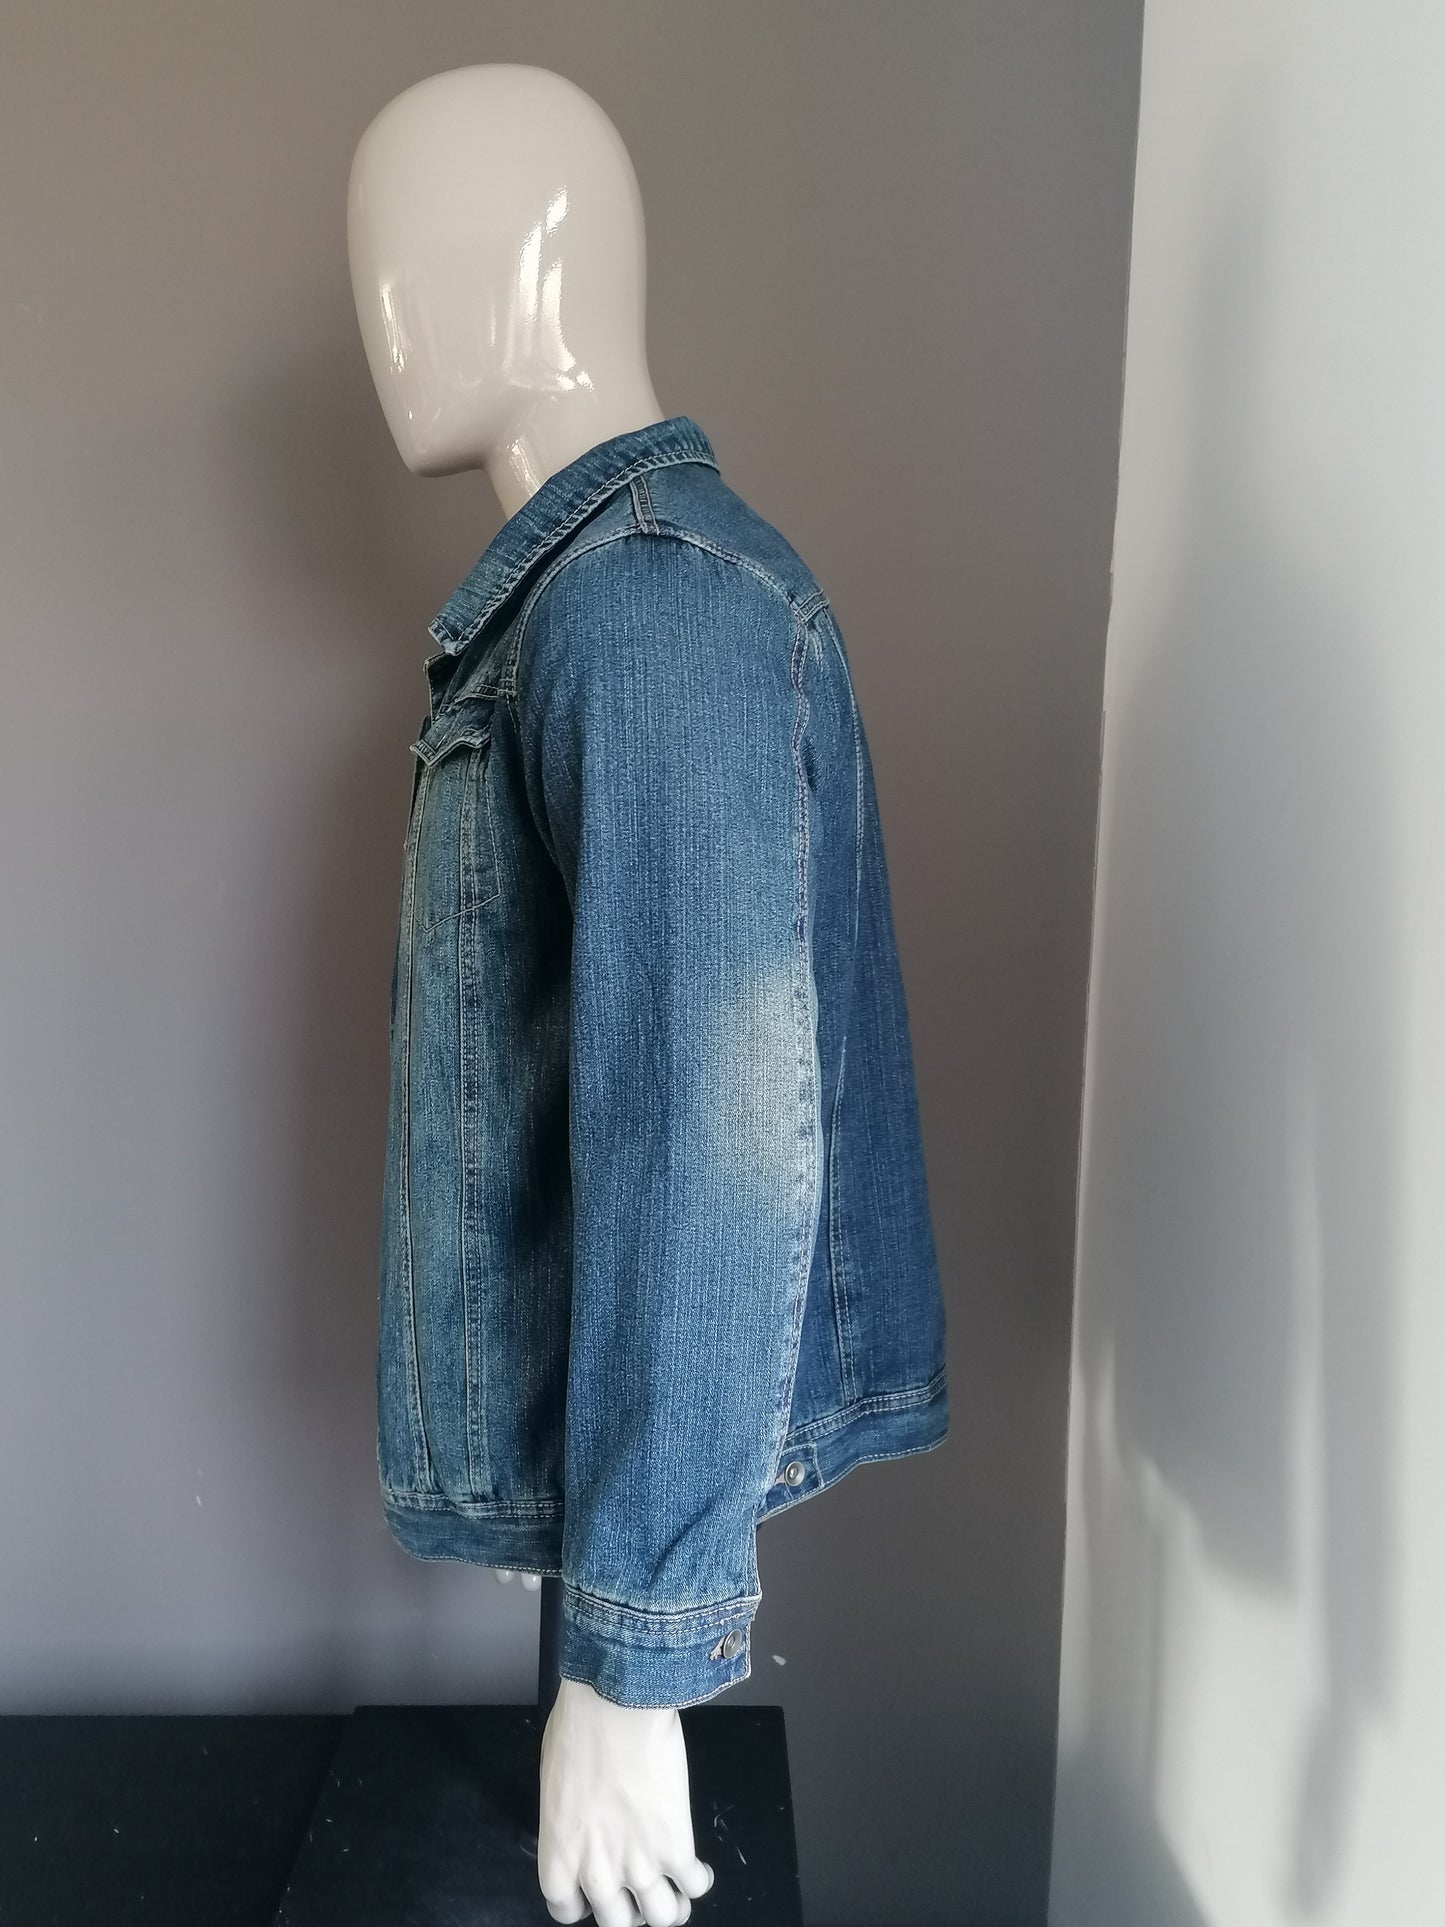 Vintage Cherokee Jeansjacke. Leicht gesäumt Farbig blau. Größe S.